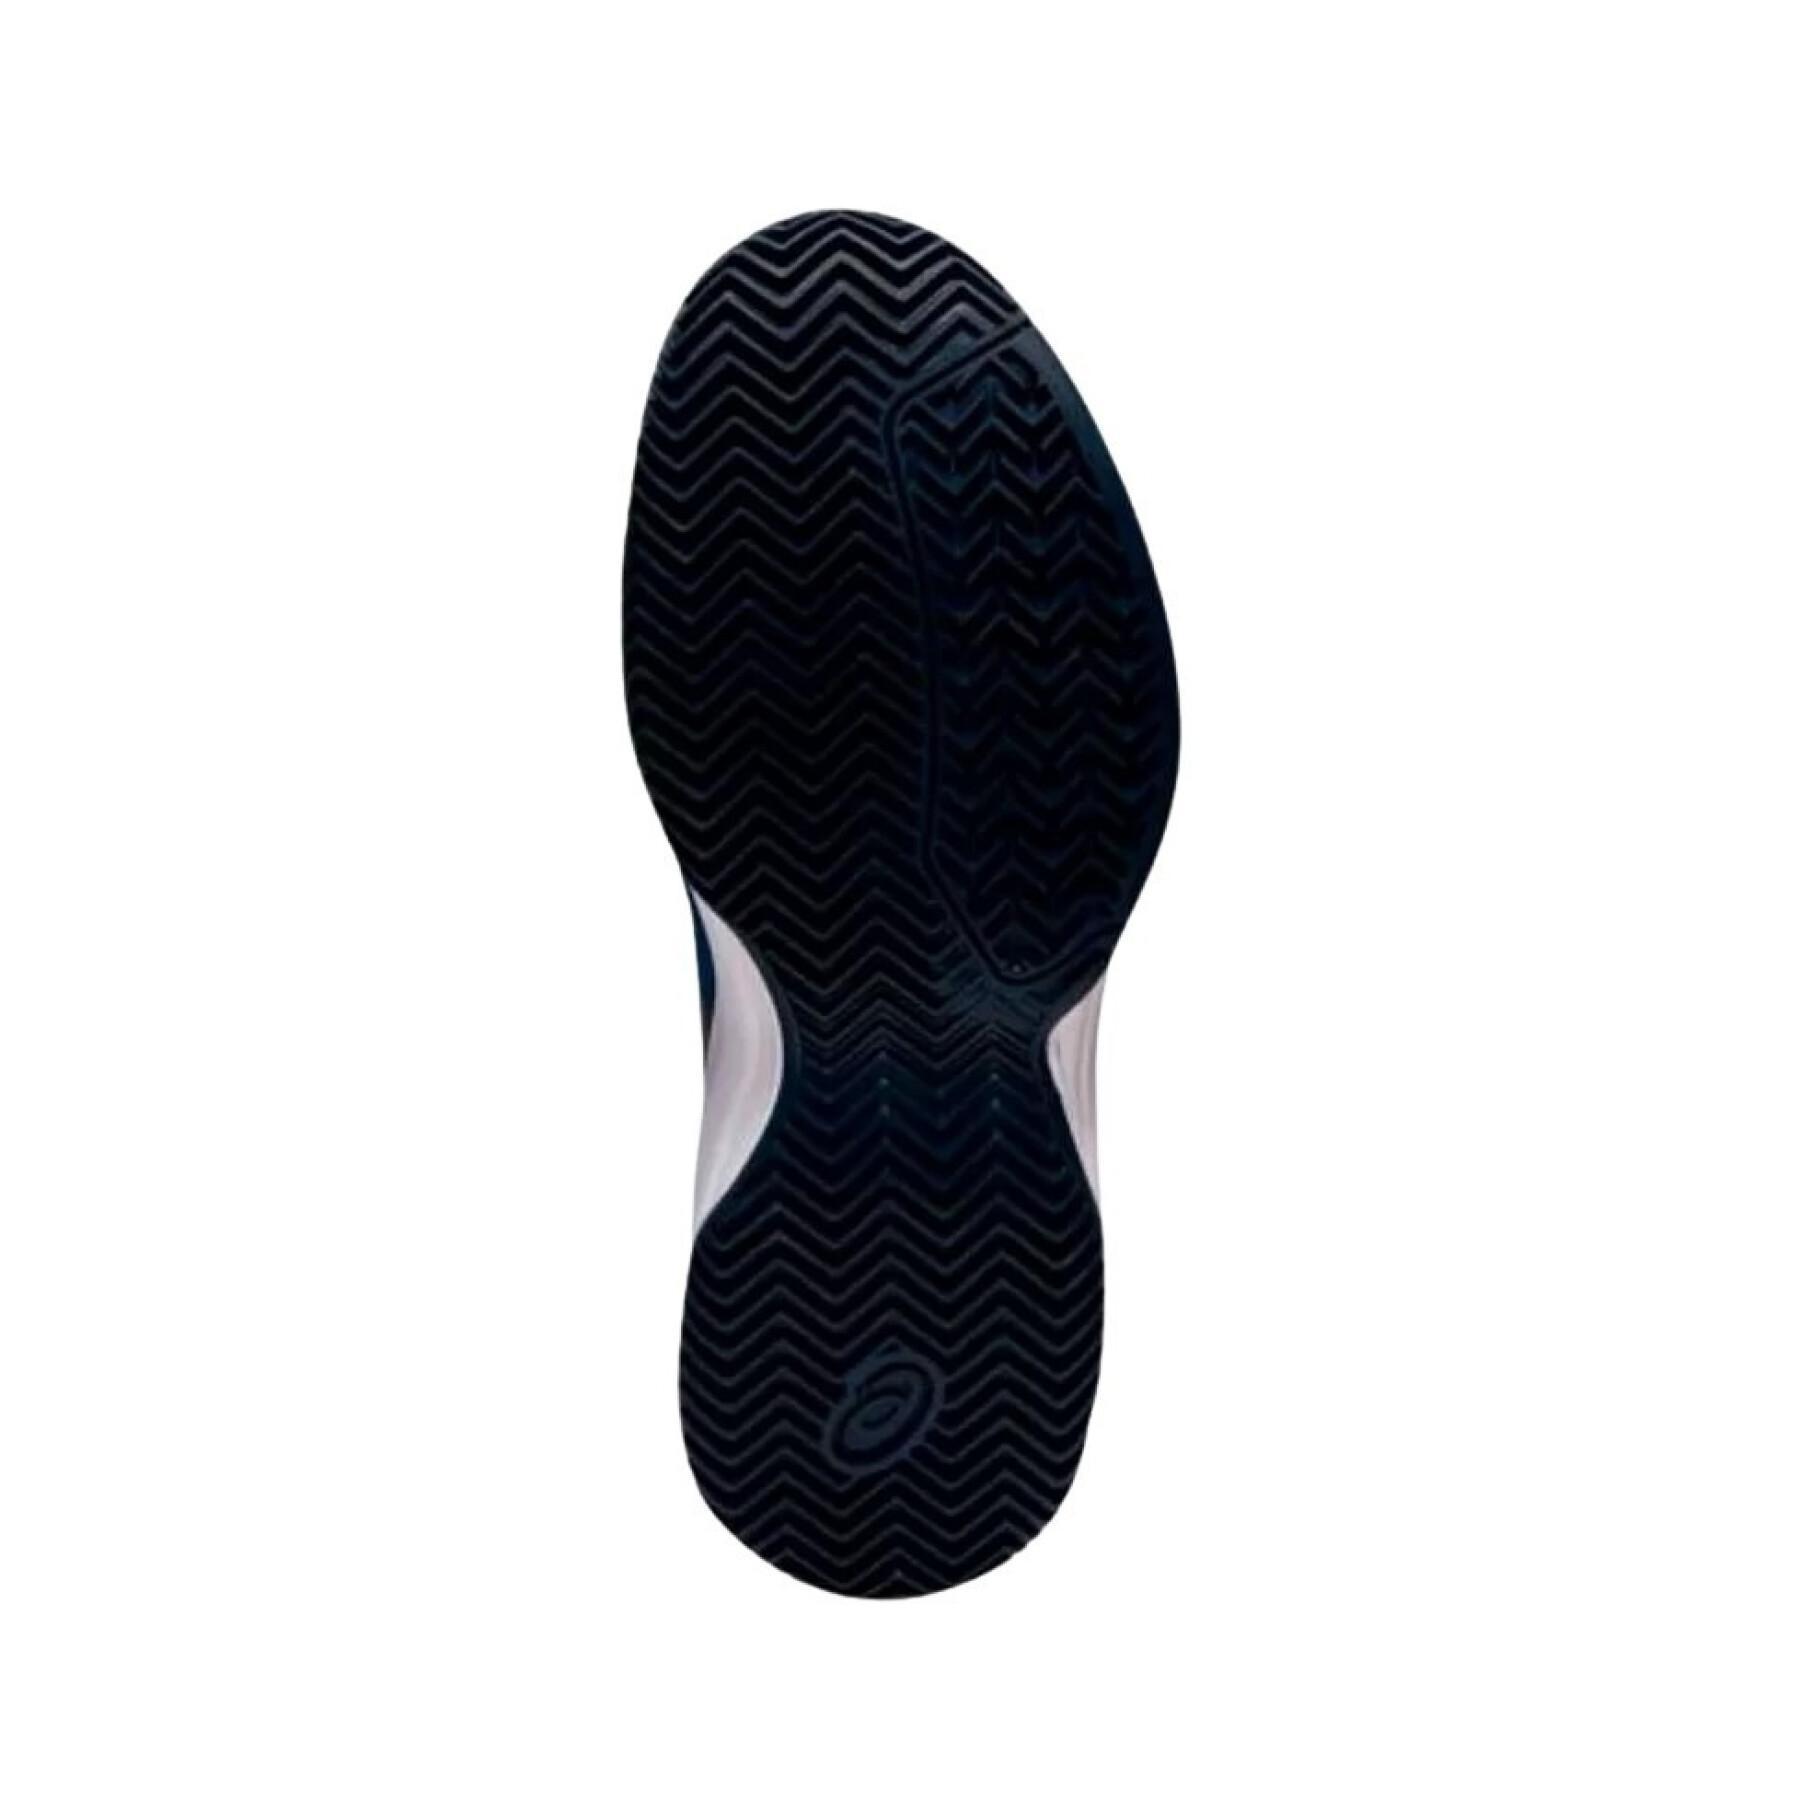 Chaussures de padel enfant Asics Gel-Padel Pro 5 Gs